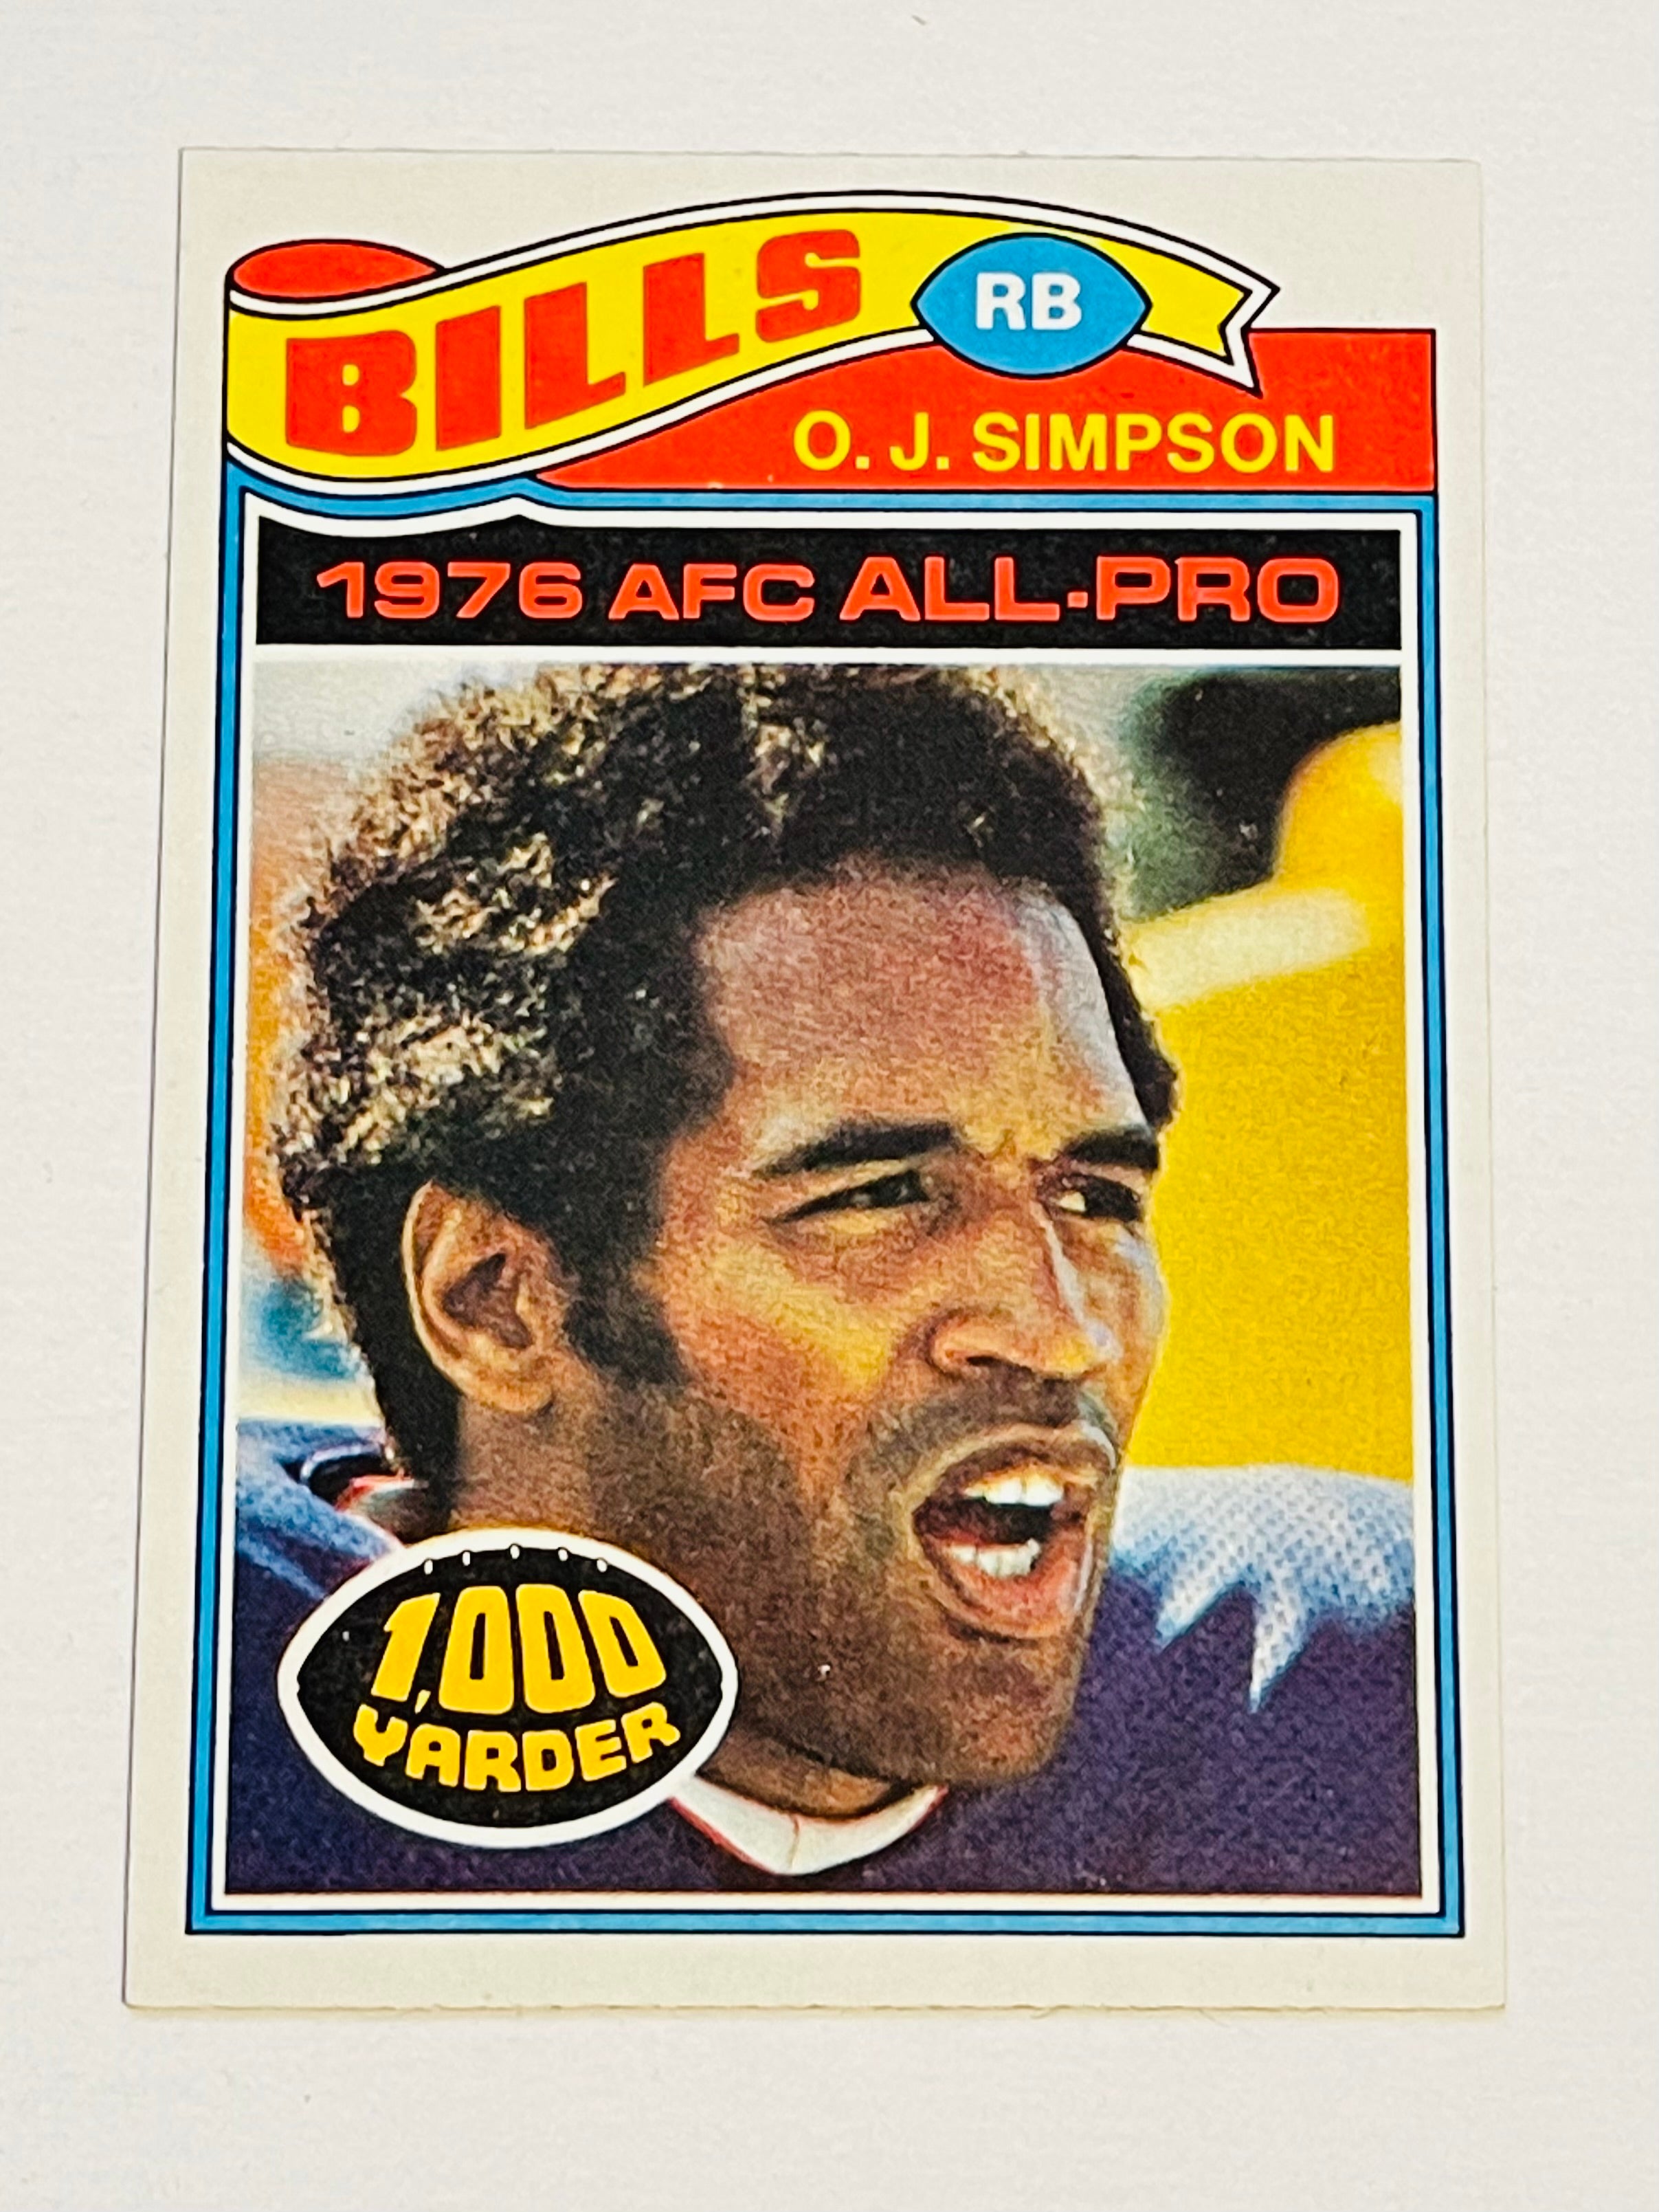 O.J. Simpson Buffalo Bills high grade condition football card 1977